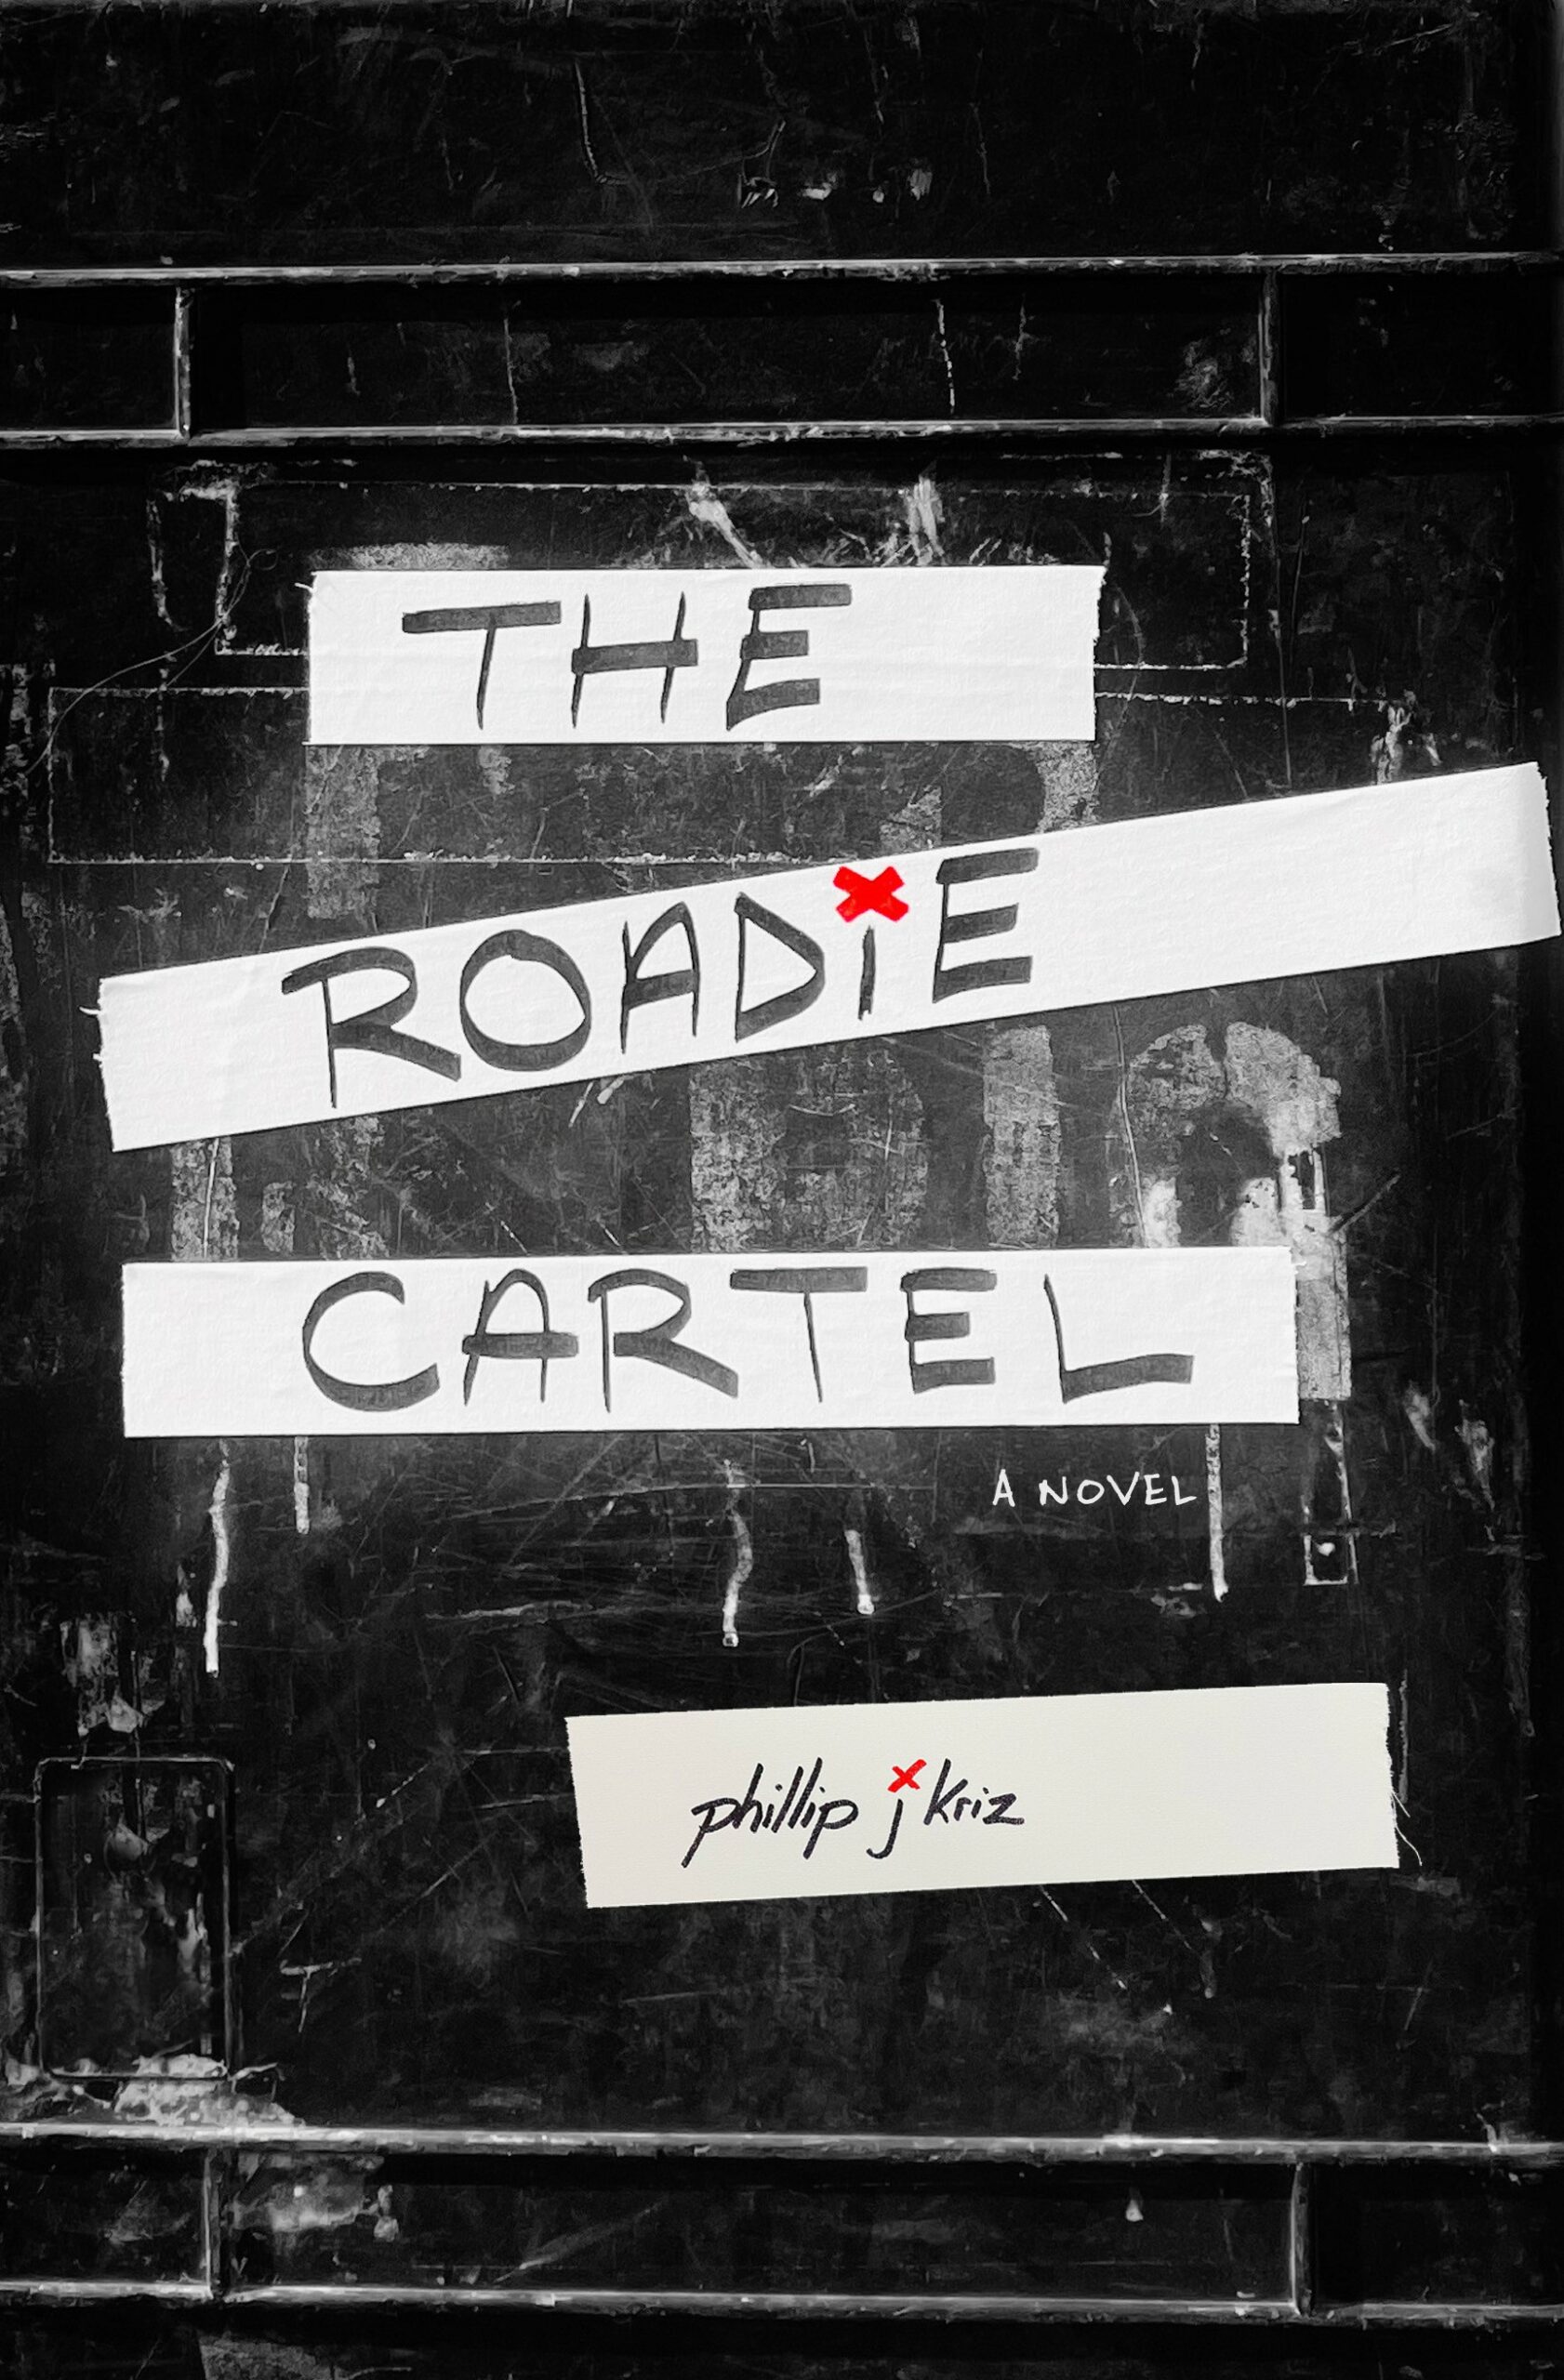 The Roadie Cartel by Phillip J Kriz